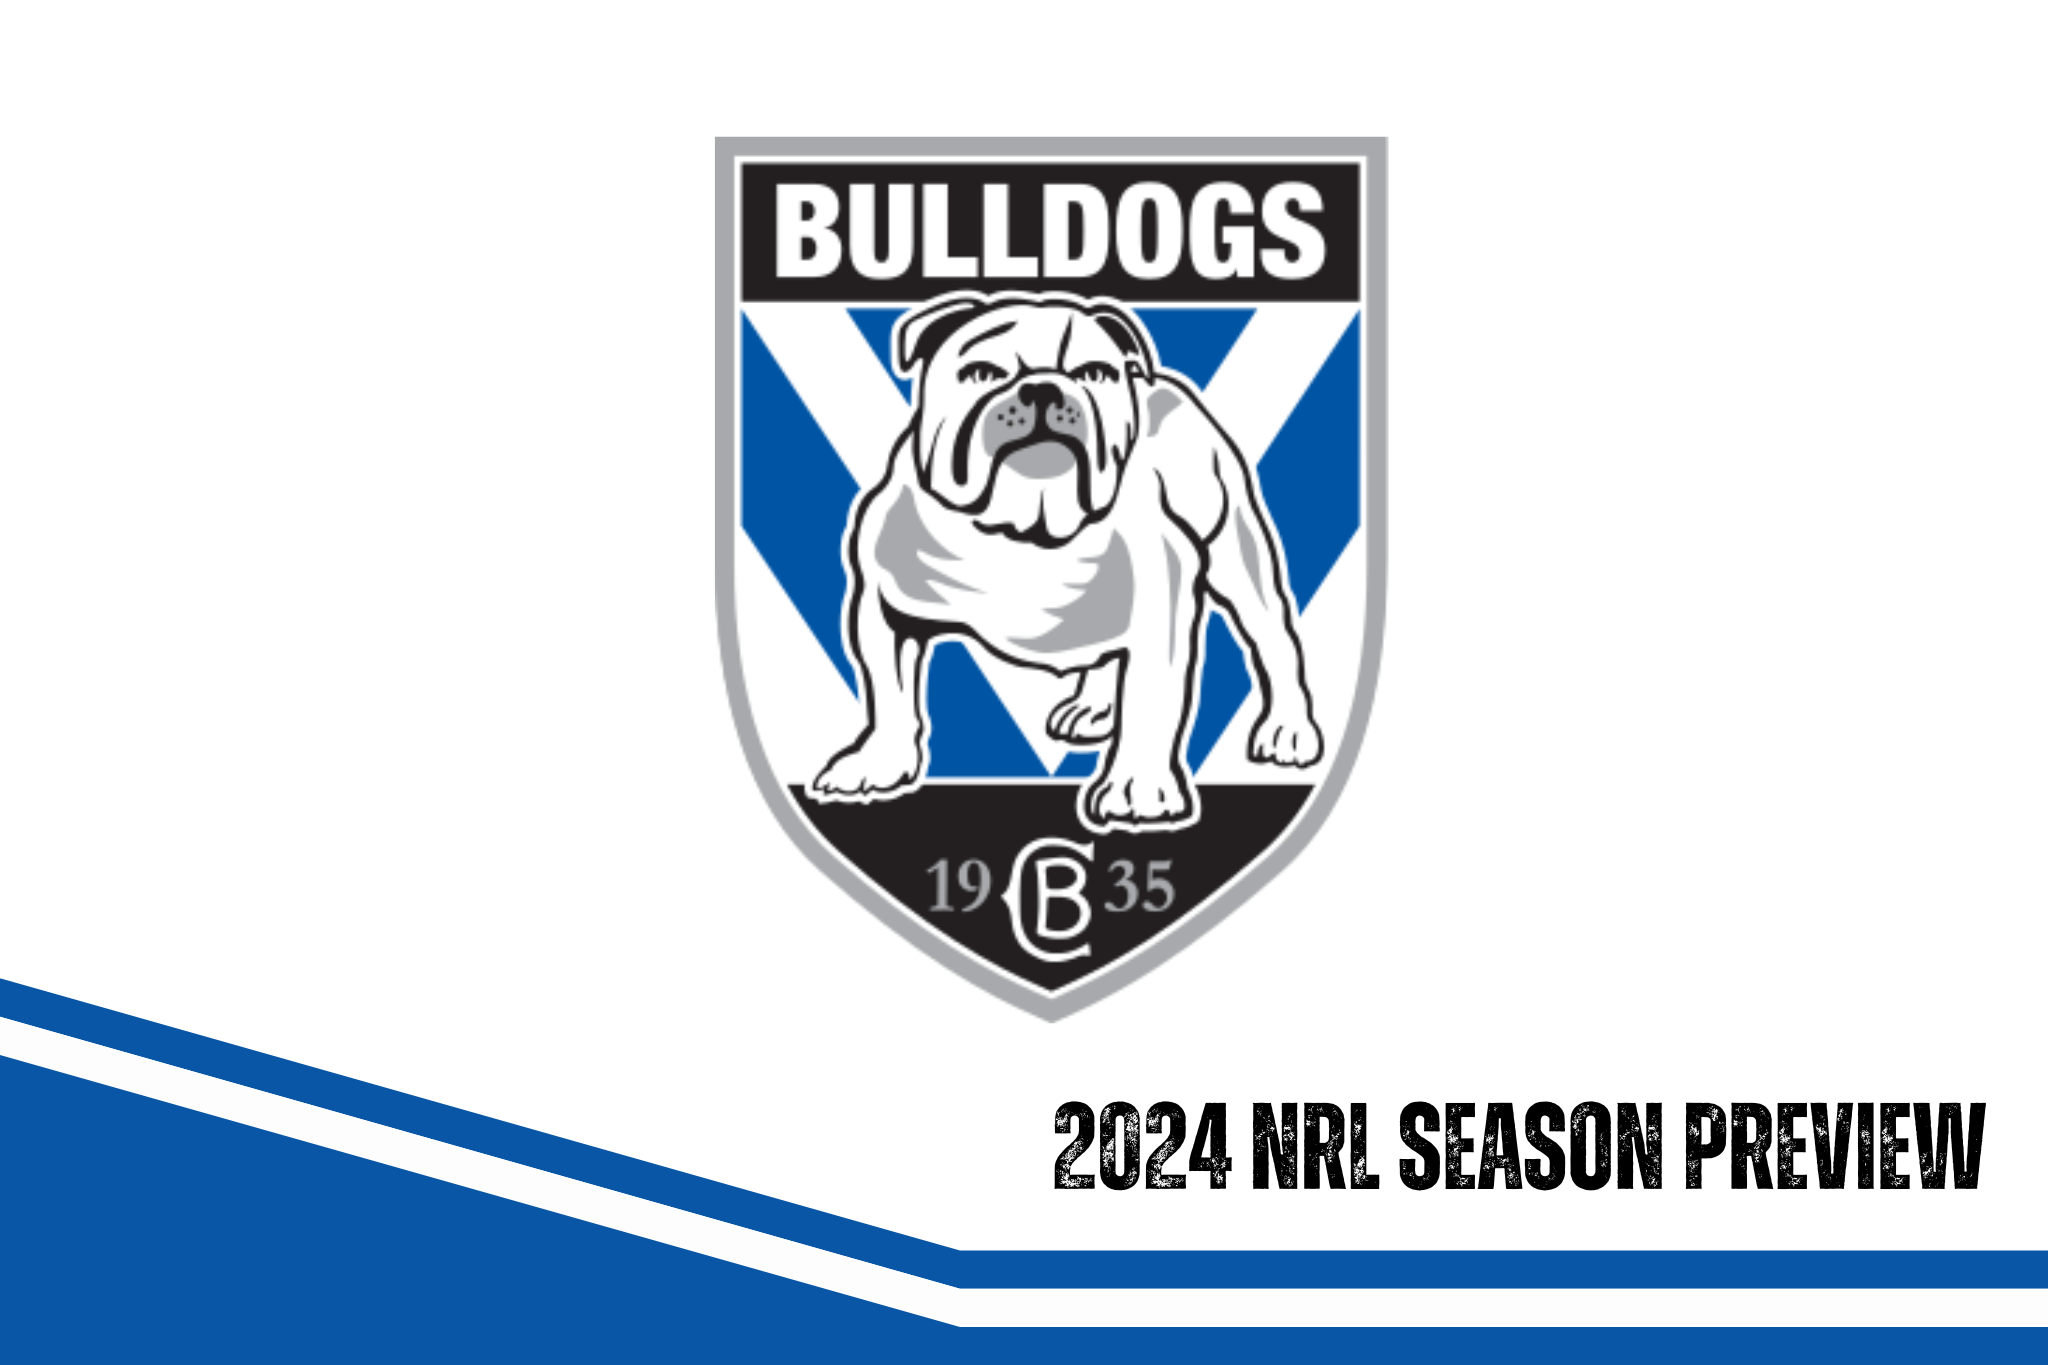 Canterbury-Bankstown Bulldogs 2024 season preview